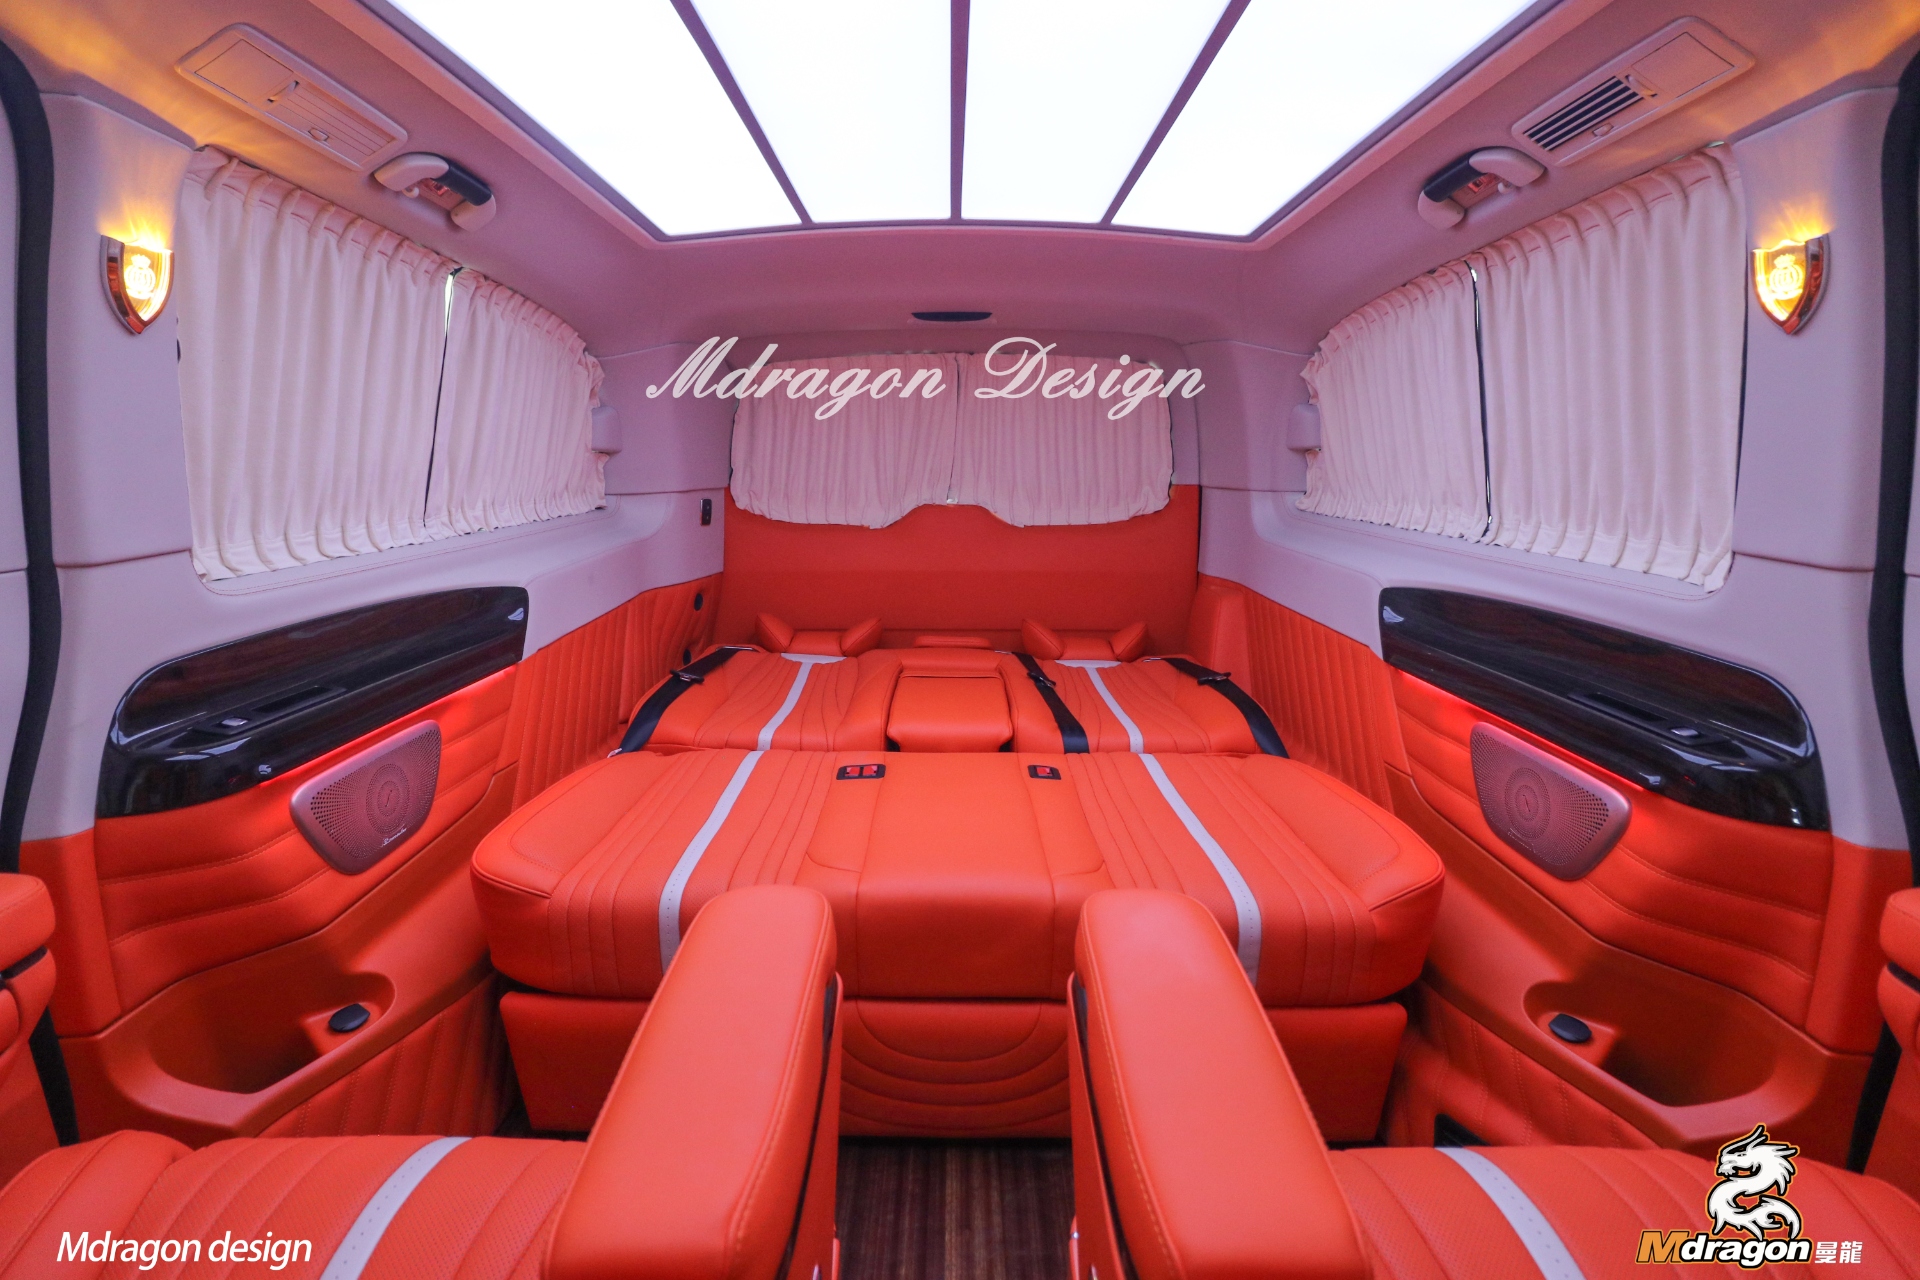 506 Benz V class interior seats modification double doors